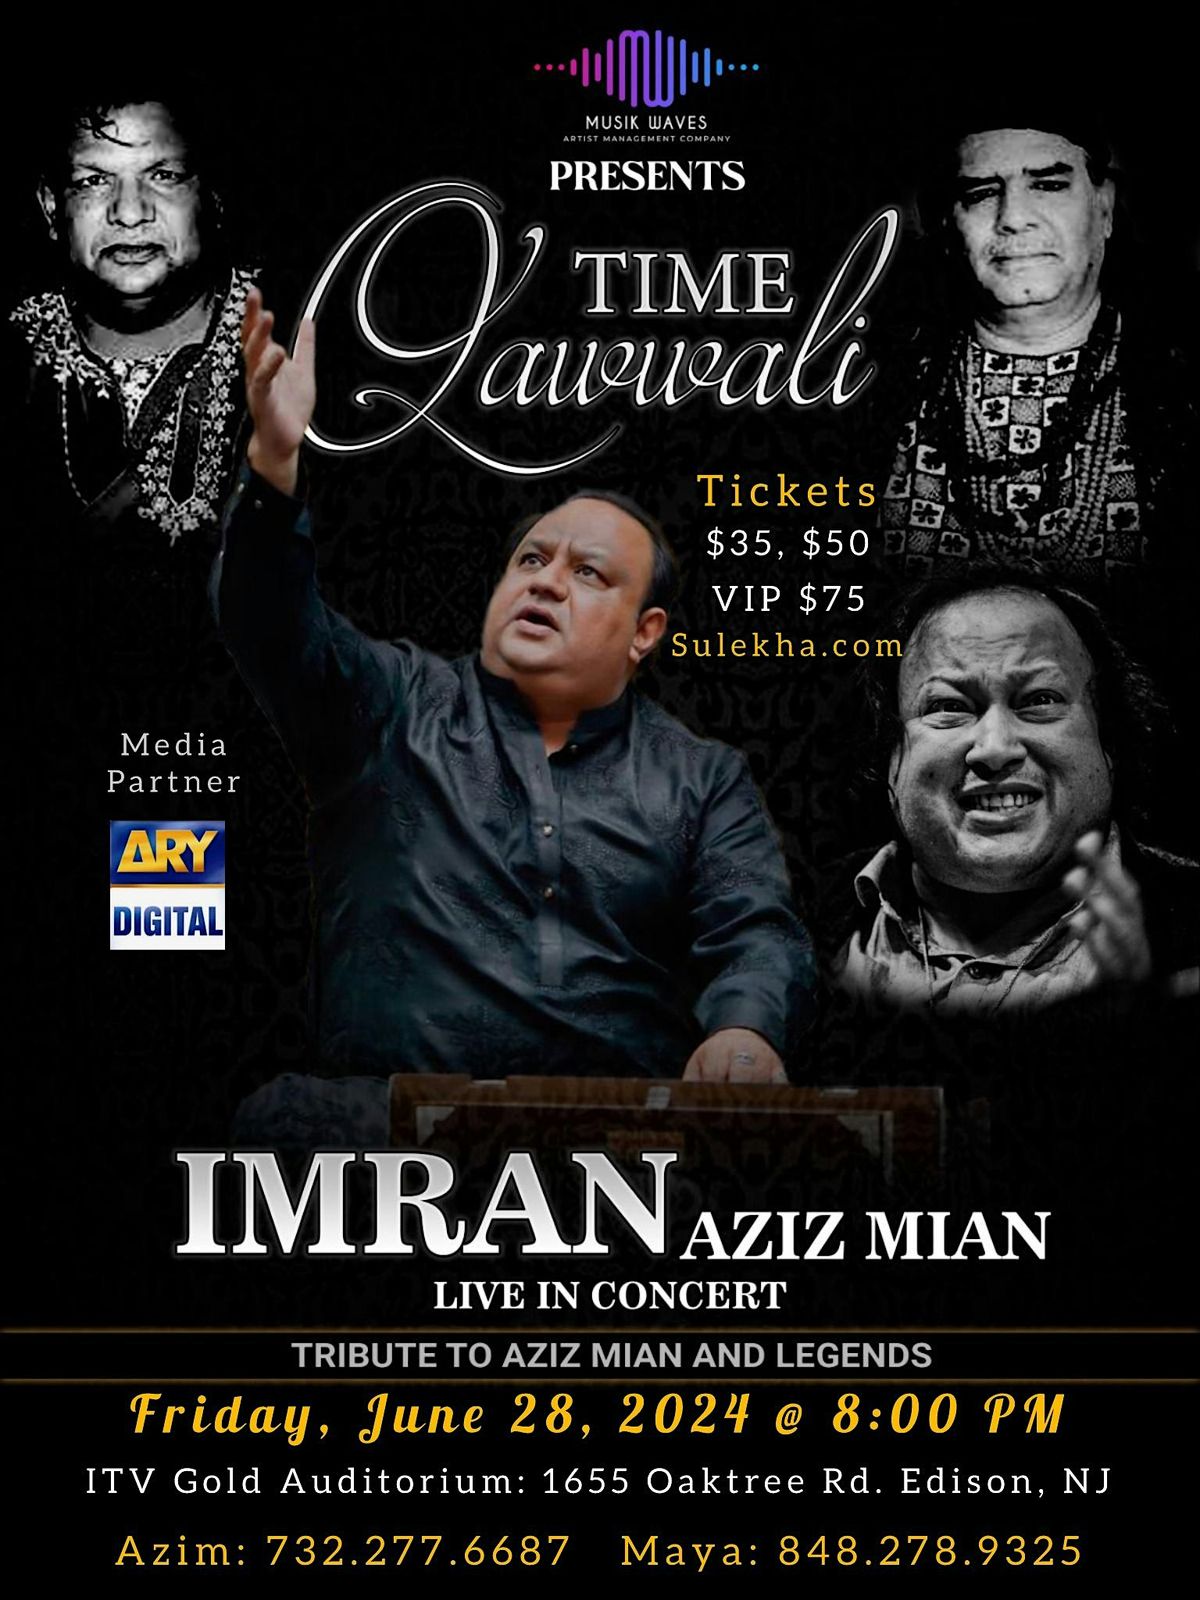 Qawwali Time with Imran Aziz Mian